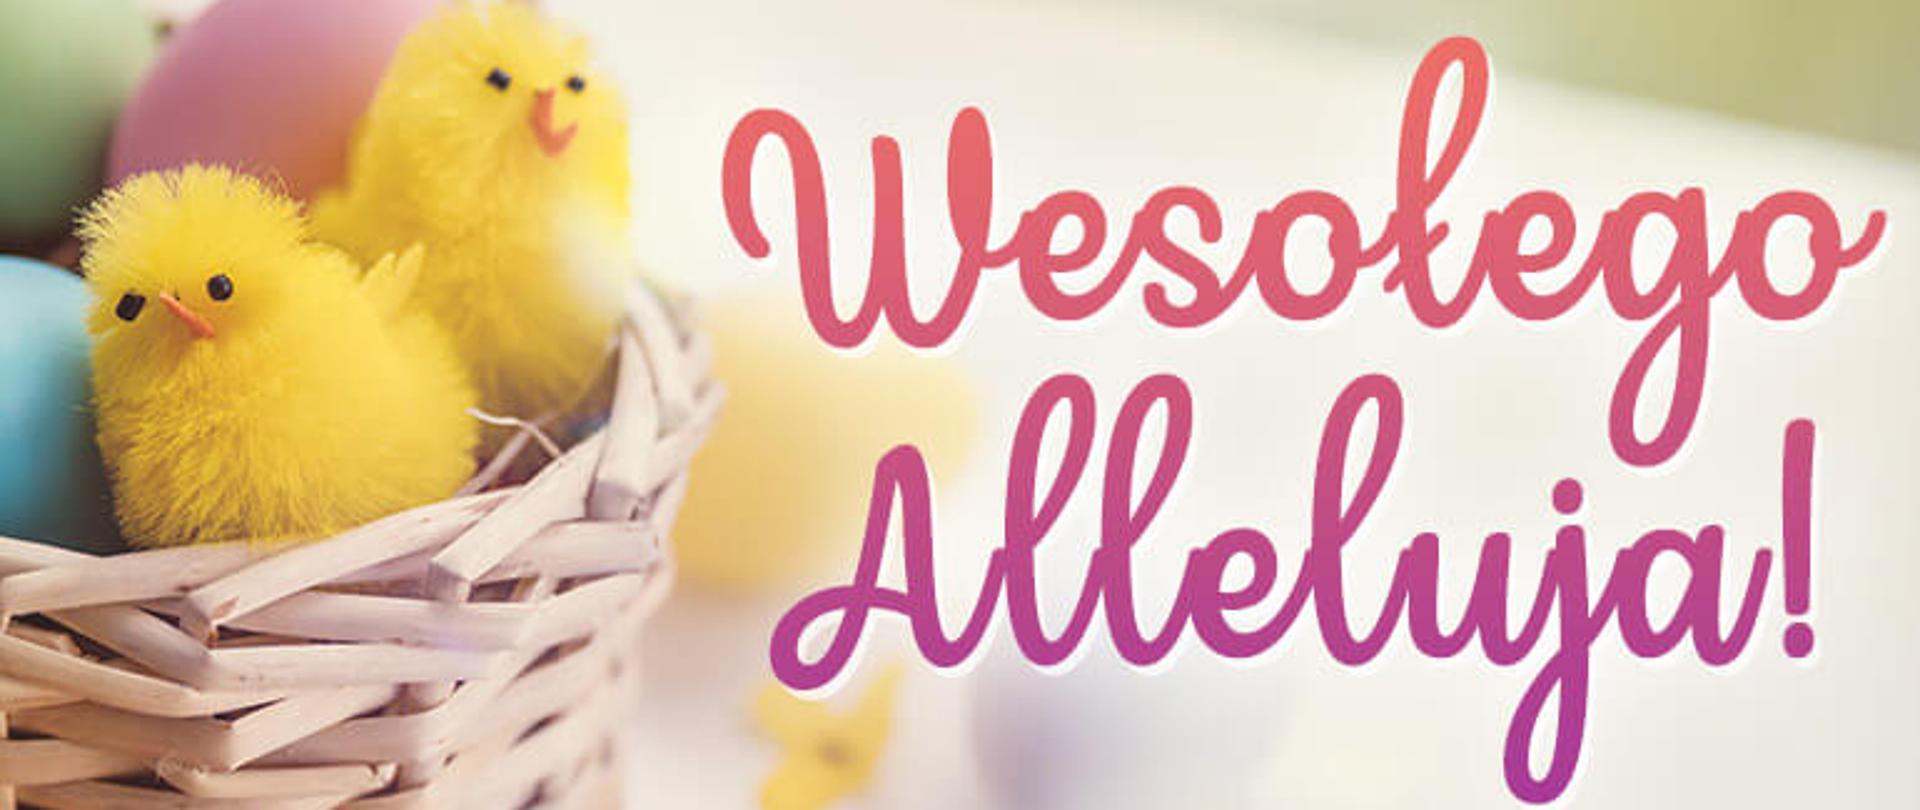 Wiklinowy koszyczek z trzema pisankami (zieloną, niebieską i różową) oraz dwoma żółtymi sztucznymi kurczaczkami. Z boku różowy napis "Wesołego Alleluja!"